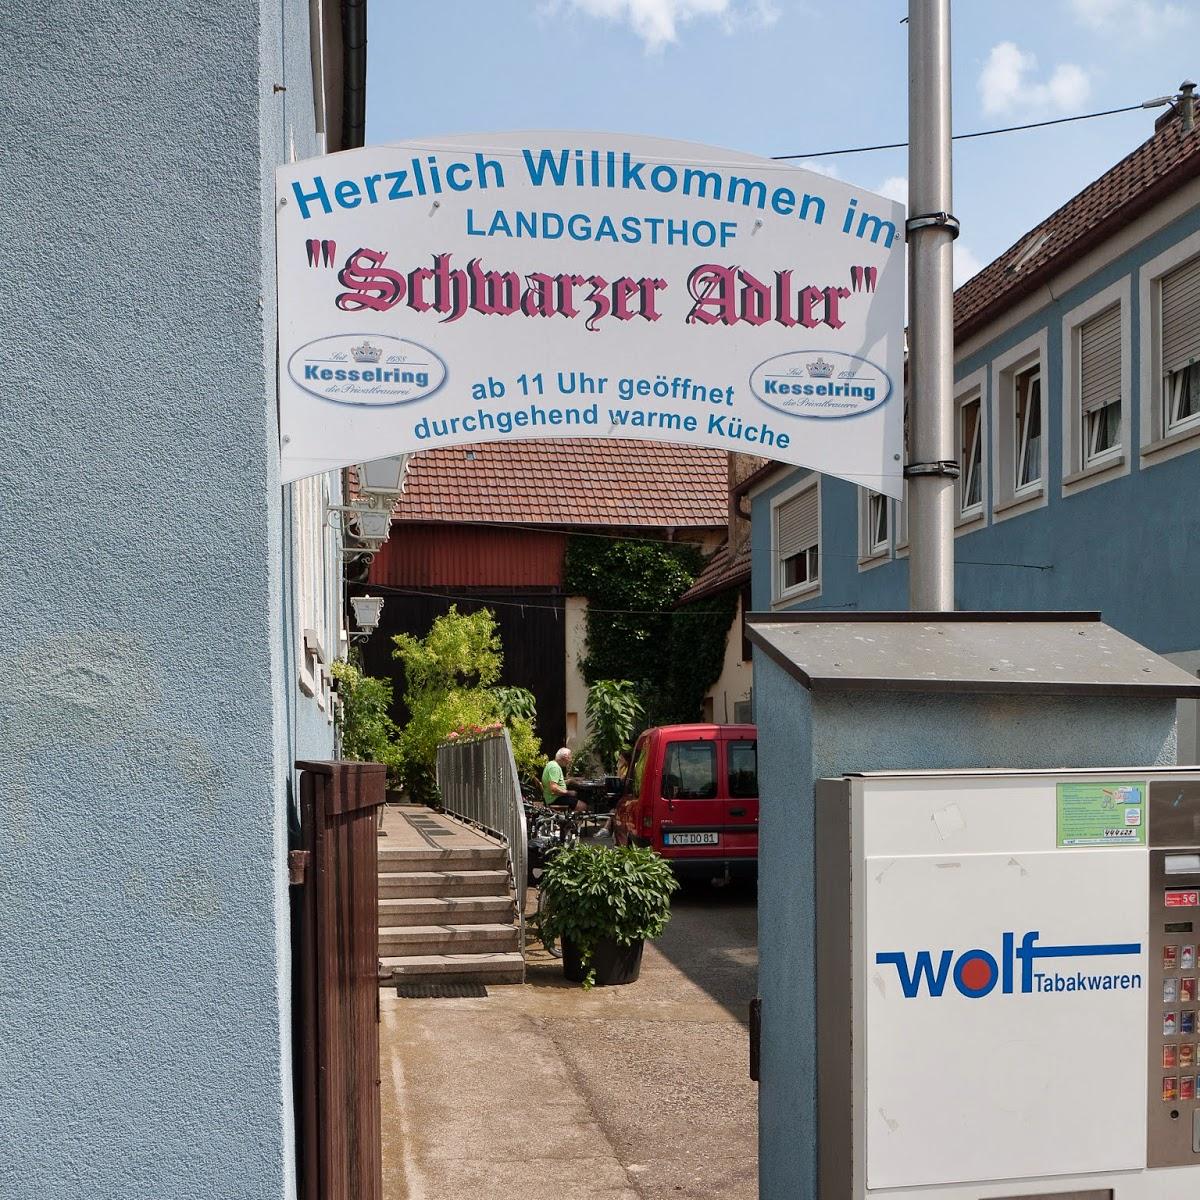 Restaurant "Schwarzer Adler" in Schwarzach am Main